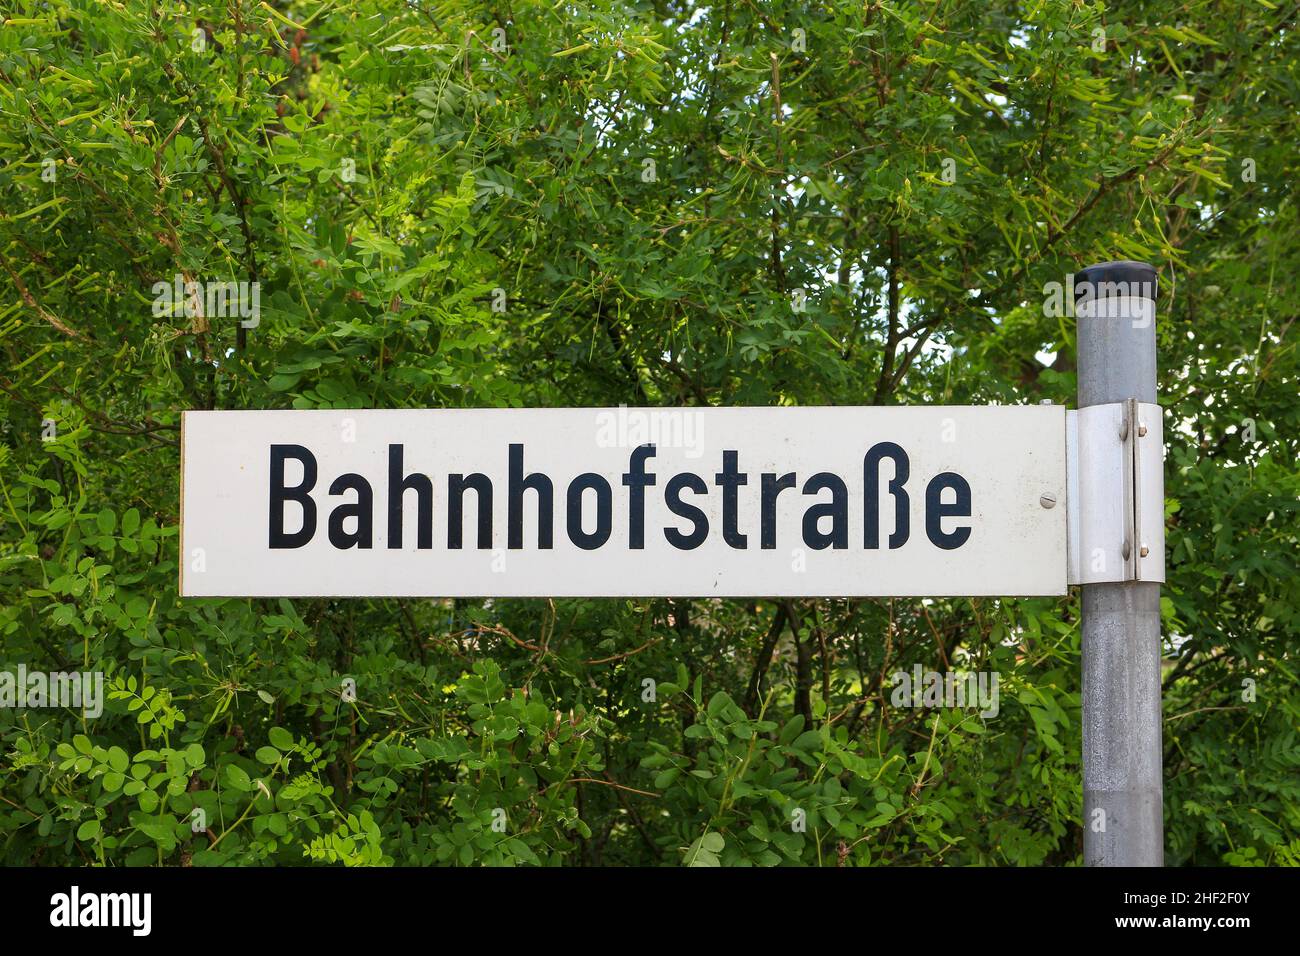 Il segnale stradale tedesco si traduce in via della stazione ferroviaria in inglese Foto Stock